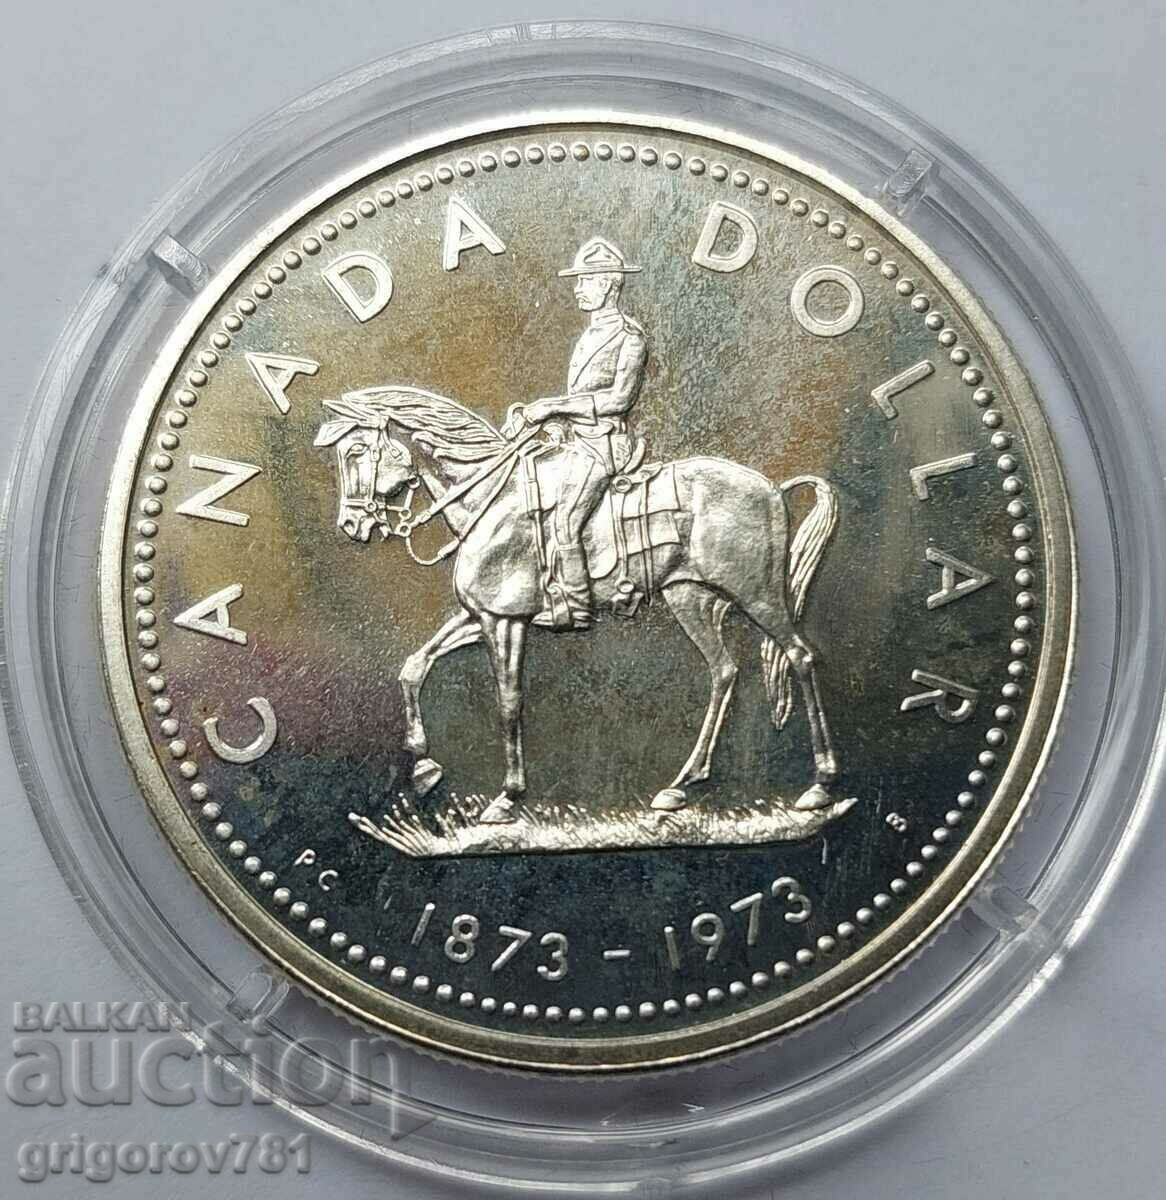 1 dollar silver Canada 1973 - silver coin